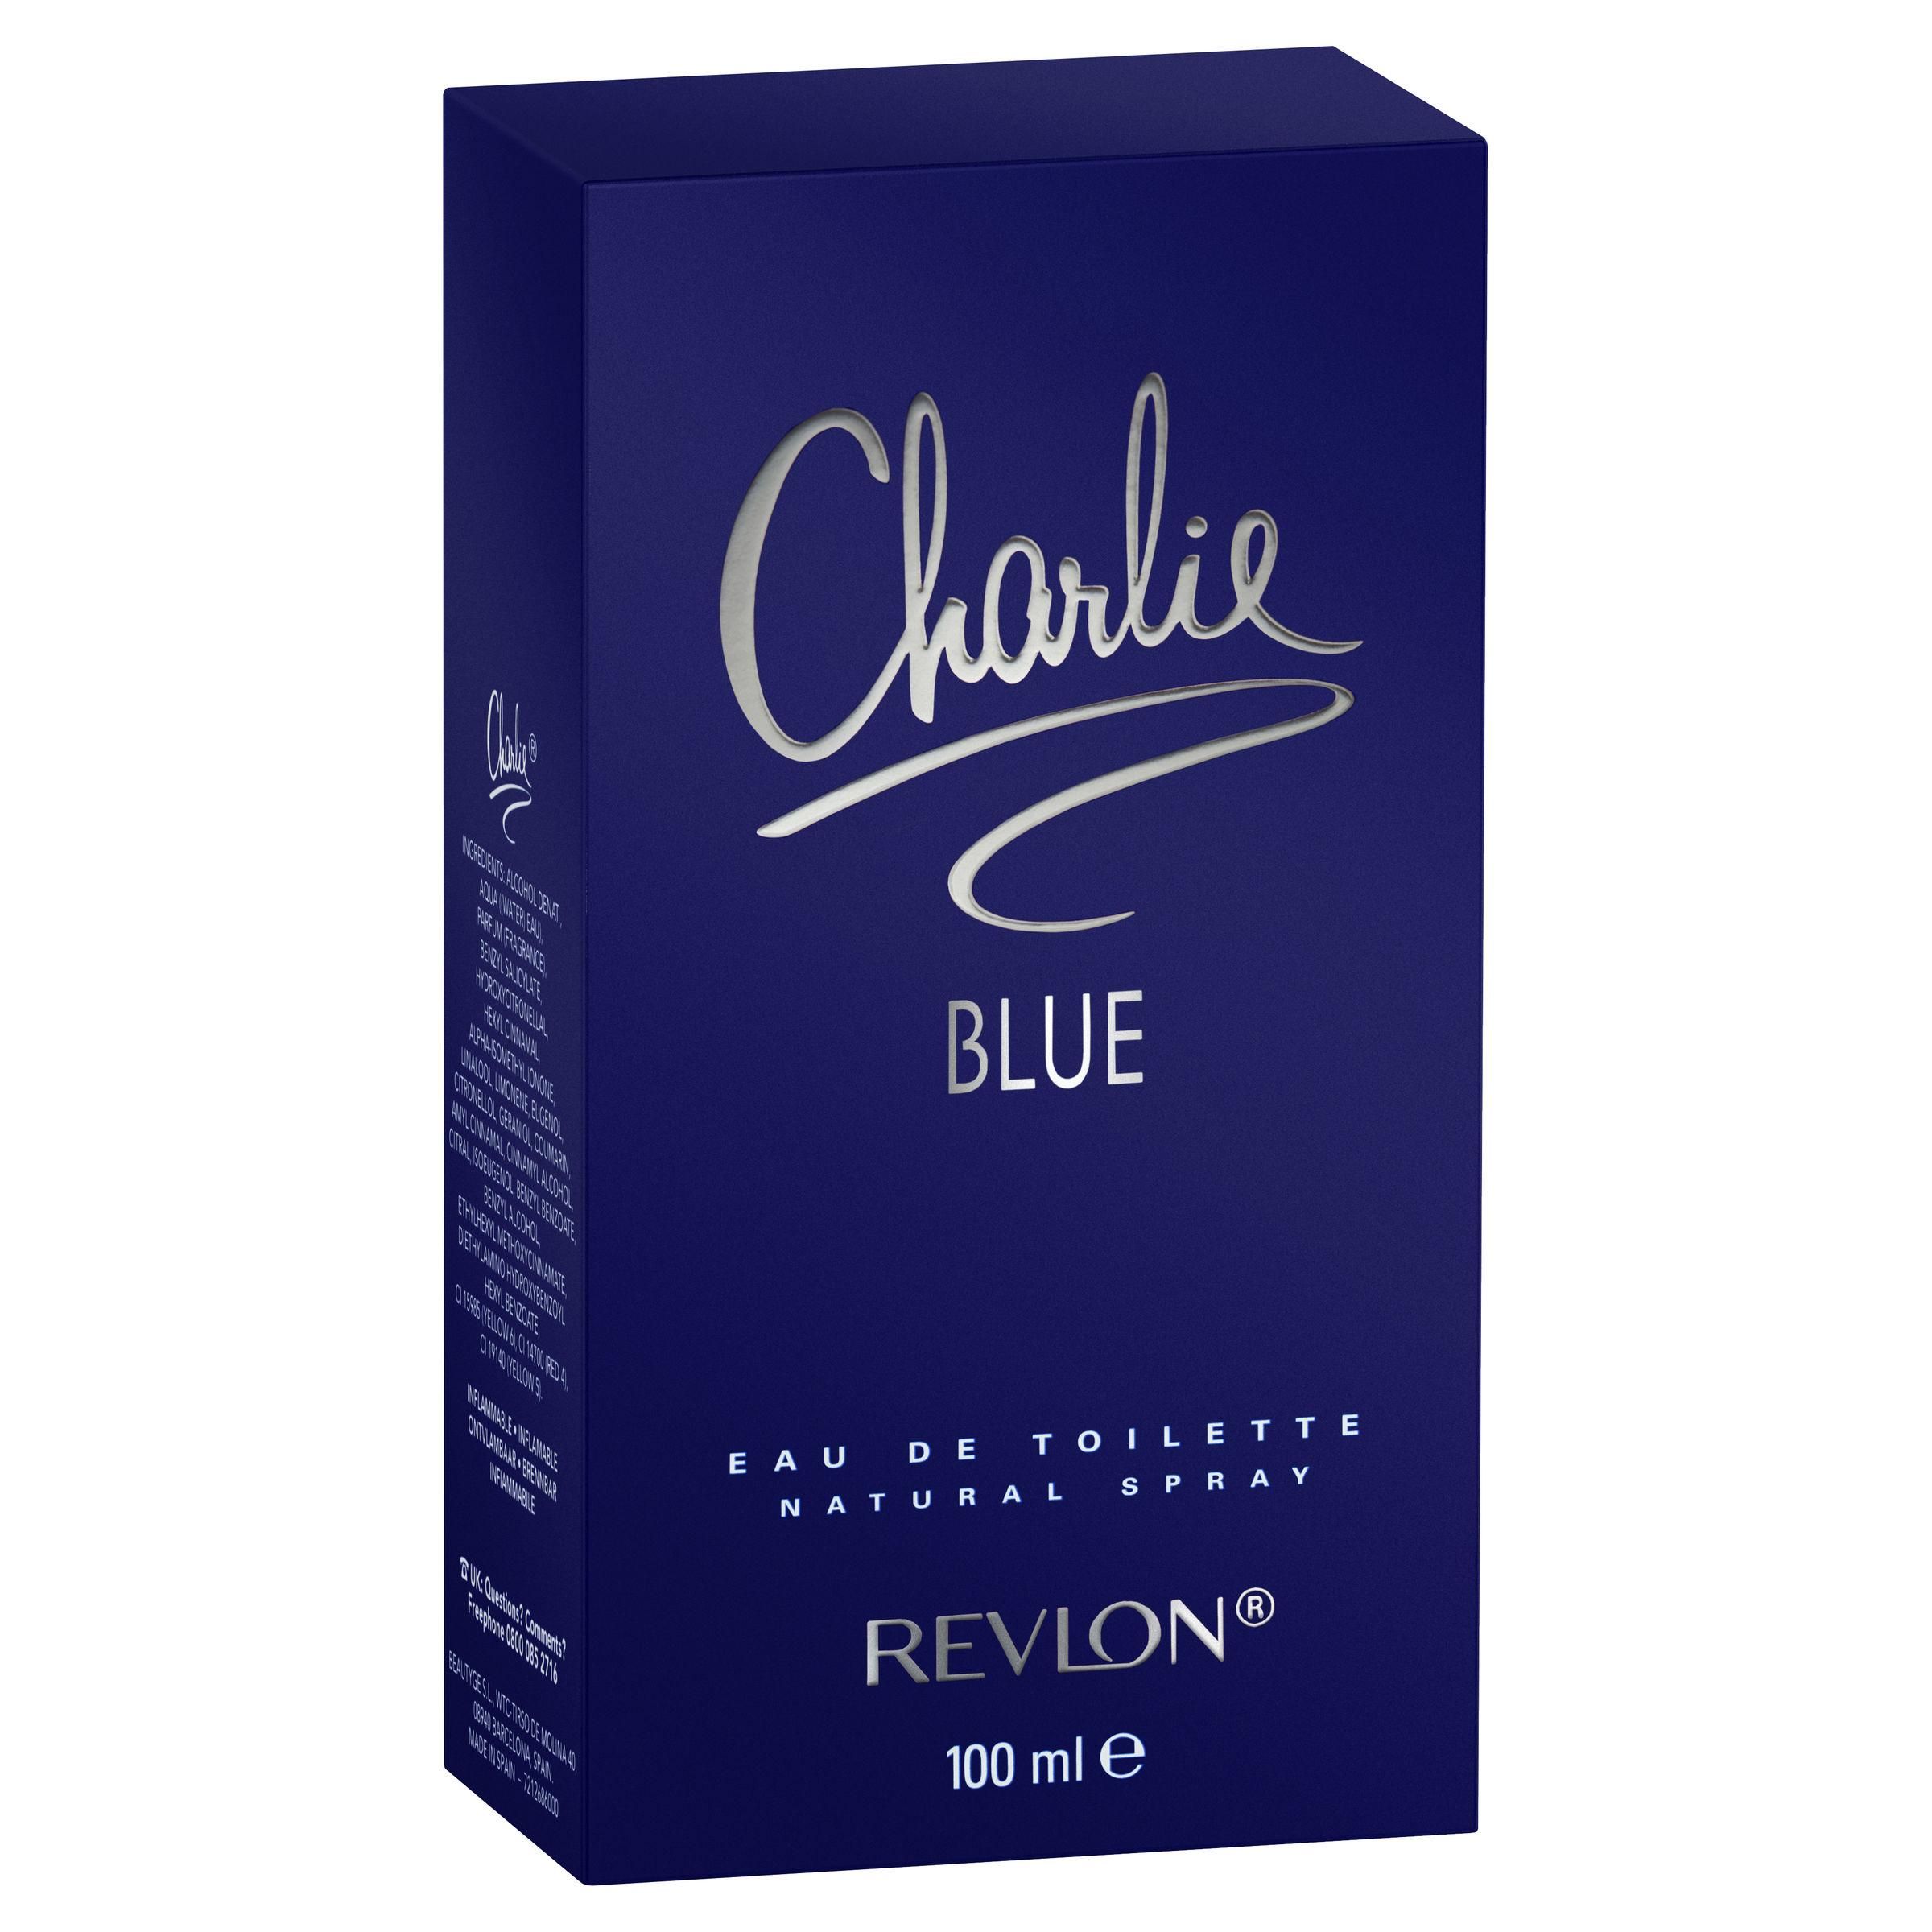 CHARLIE BLUE by REVLON Perfume for Women 3.4 oz 3.3 EDT New in Box | eBay